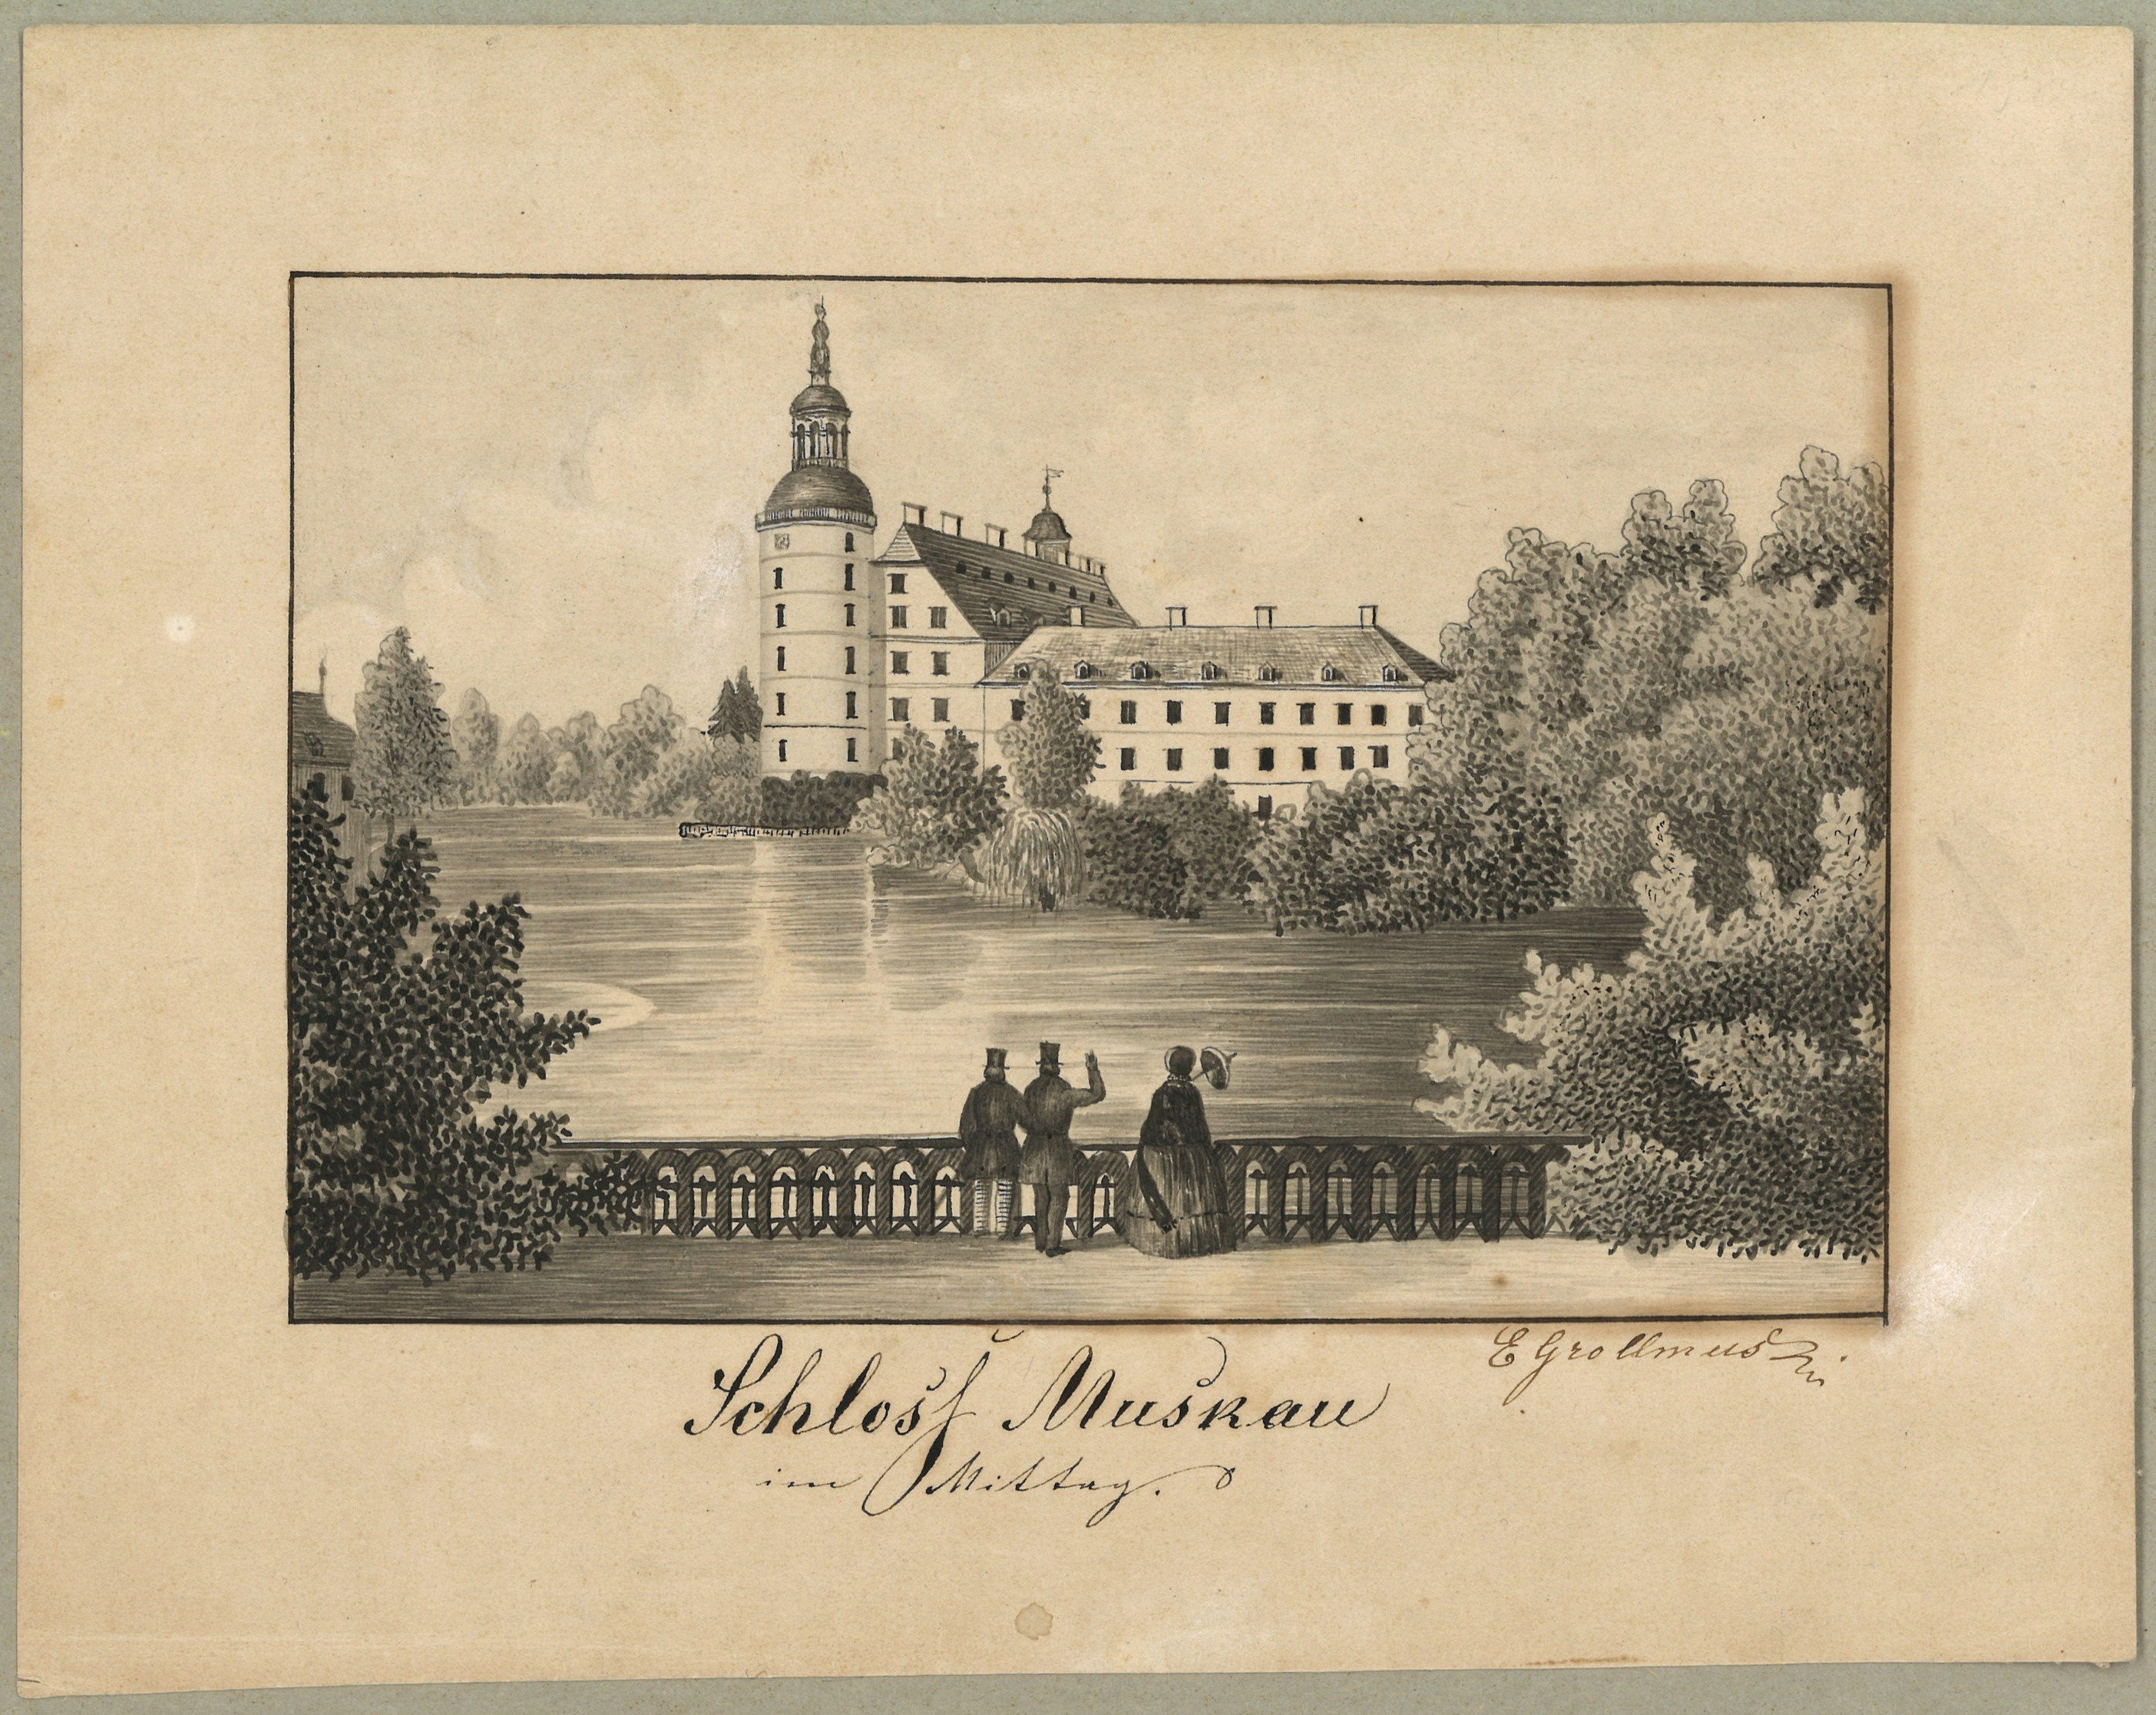 Bad Muskau: Schloss von Süden (Landesgeschichtliche Vereinigung für die Mark Brandenburg e.V., Archiv CC BY)